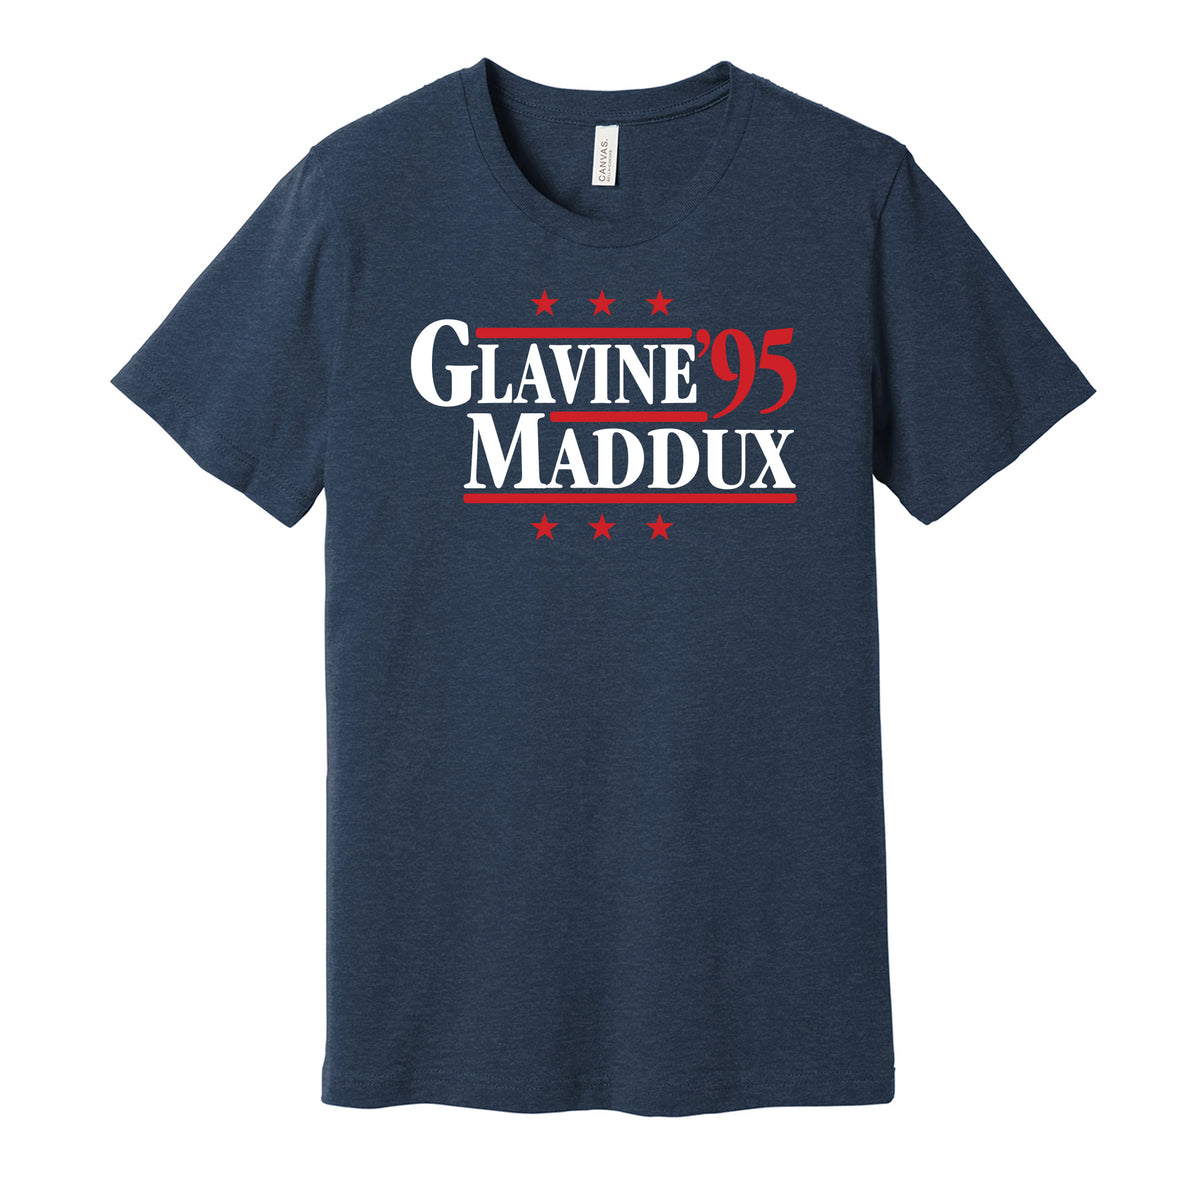 Glavine & Maddux '95 - Atlanta Baseball Retro Campaign T-Shirt